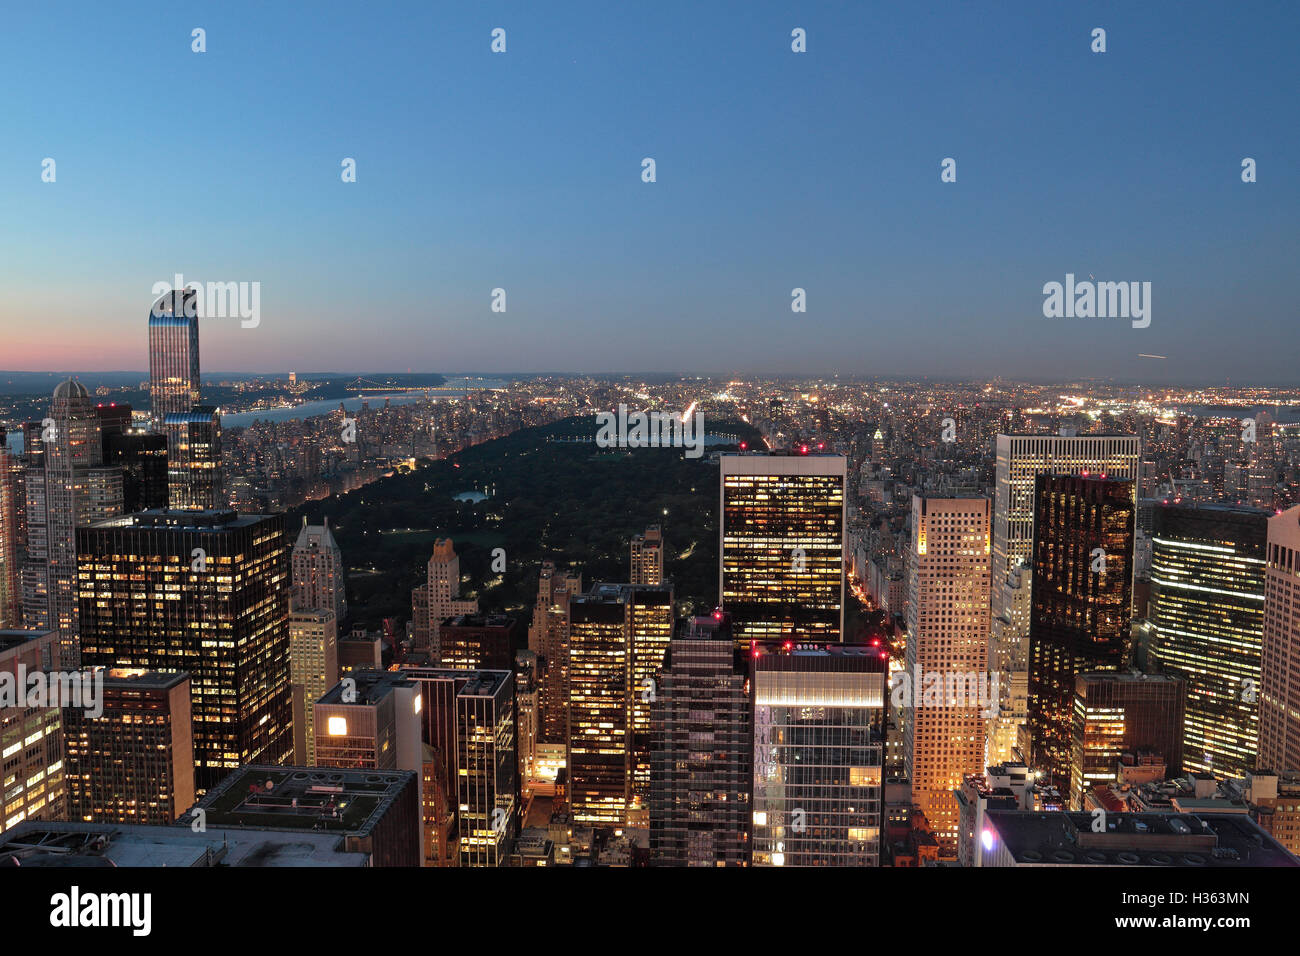 Am frühen Abend aus der Vogelperspektive in Richtung Central Park in Manhattan, New York City, New York, Vereinigte Staaten (August 2016). Stockfoto